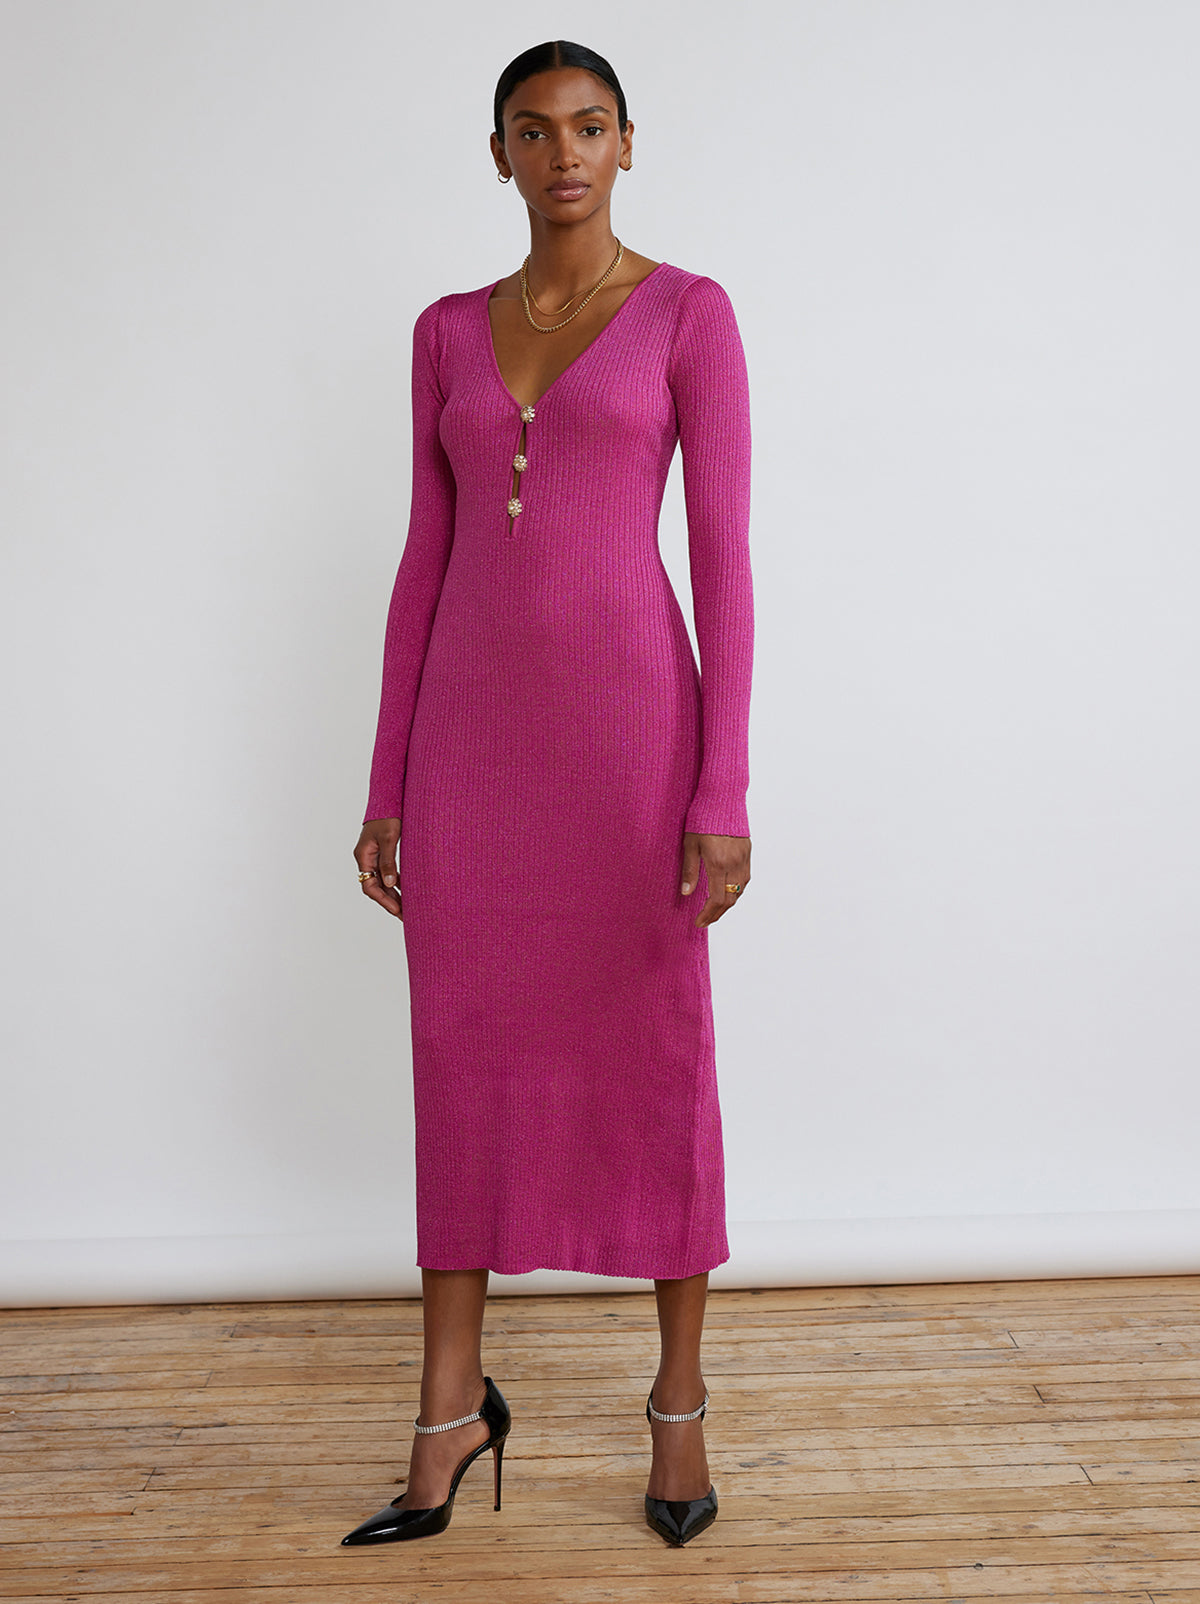 Agnes Pink Lurex Knit Dress by KITRI Studio